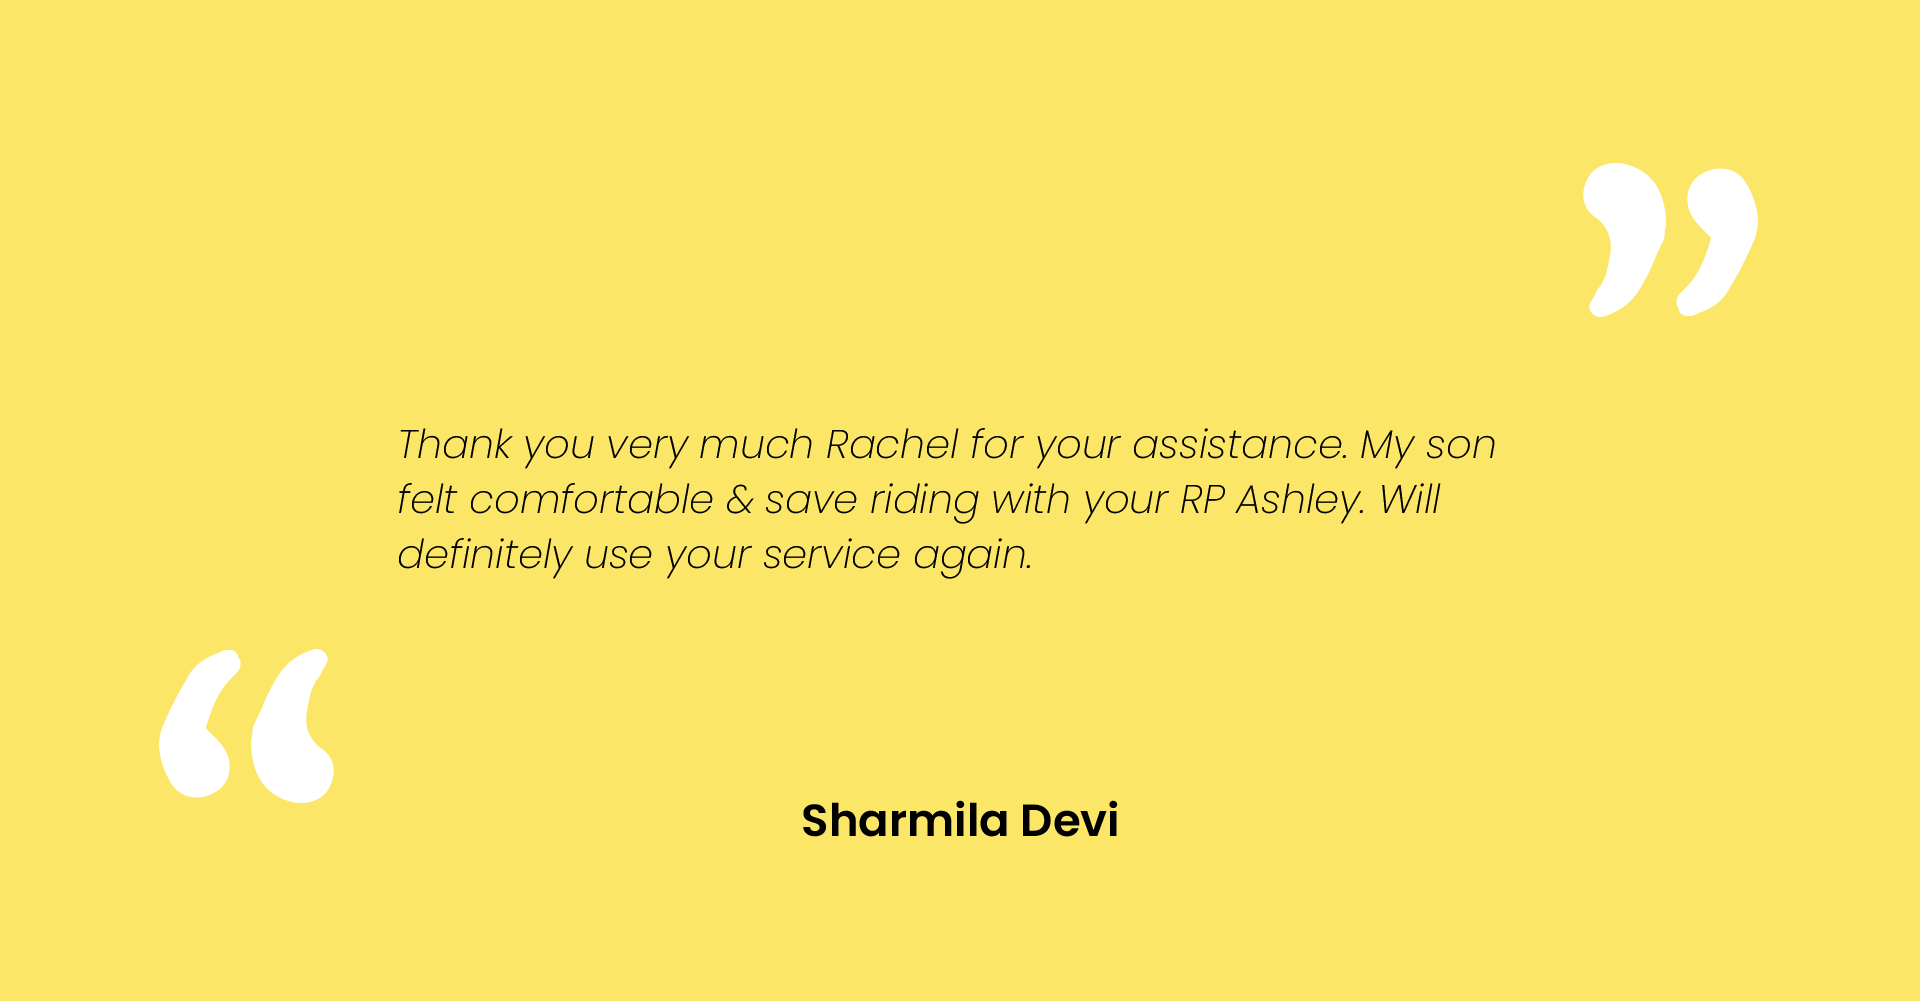 Sharmila Devi